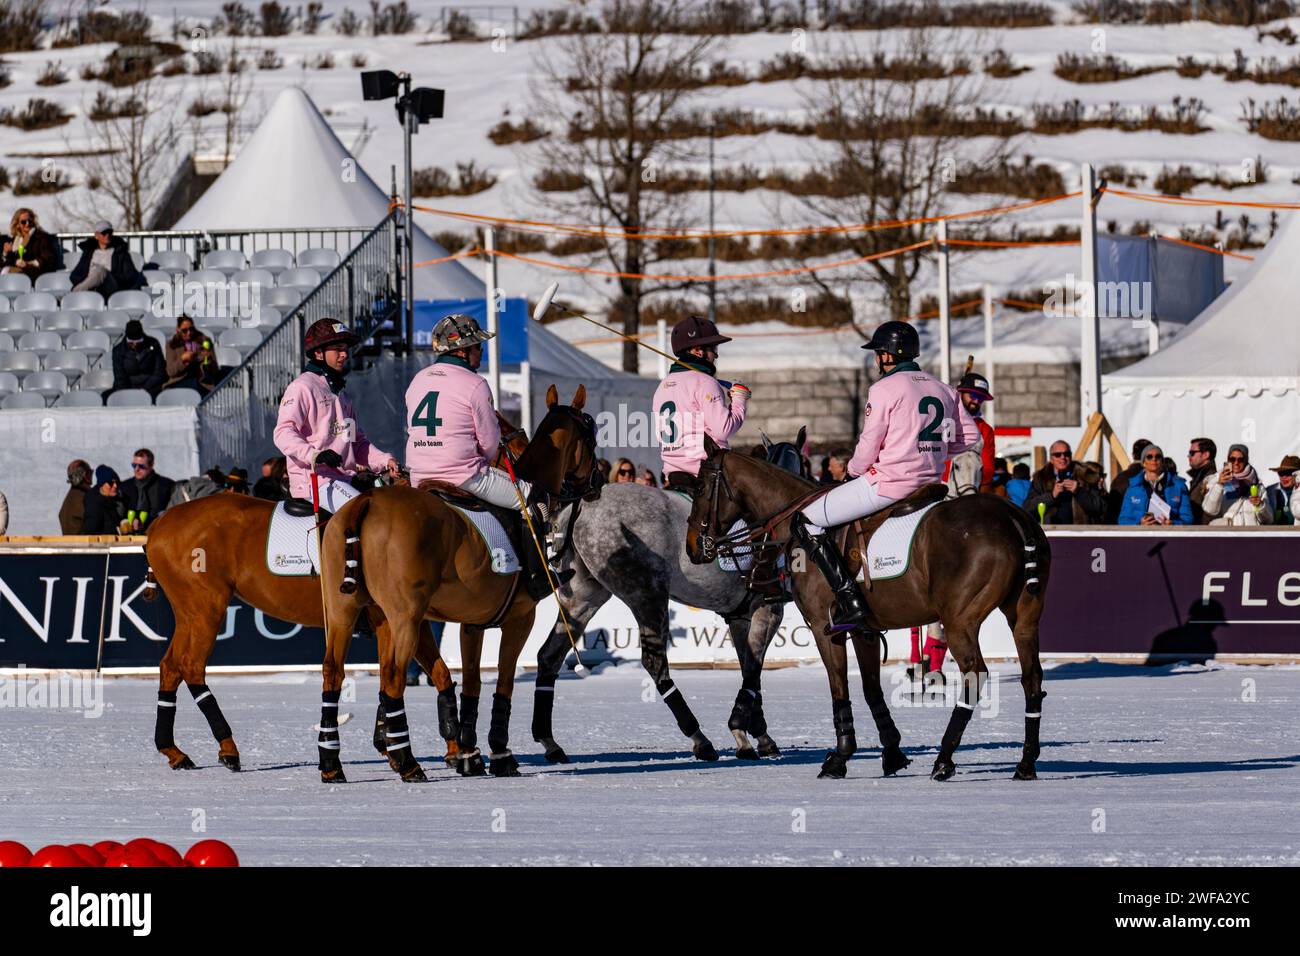 St Moritz - 28 gennaio 2024: Azioni di gioco e cerimonia di premiazione alle finali della Coppa del mondo di Polo neve St.Moritz 2024 Foto Stock